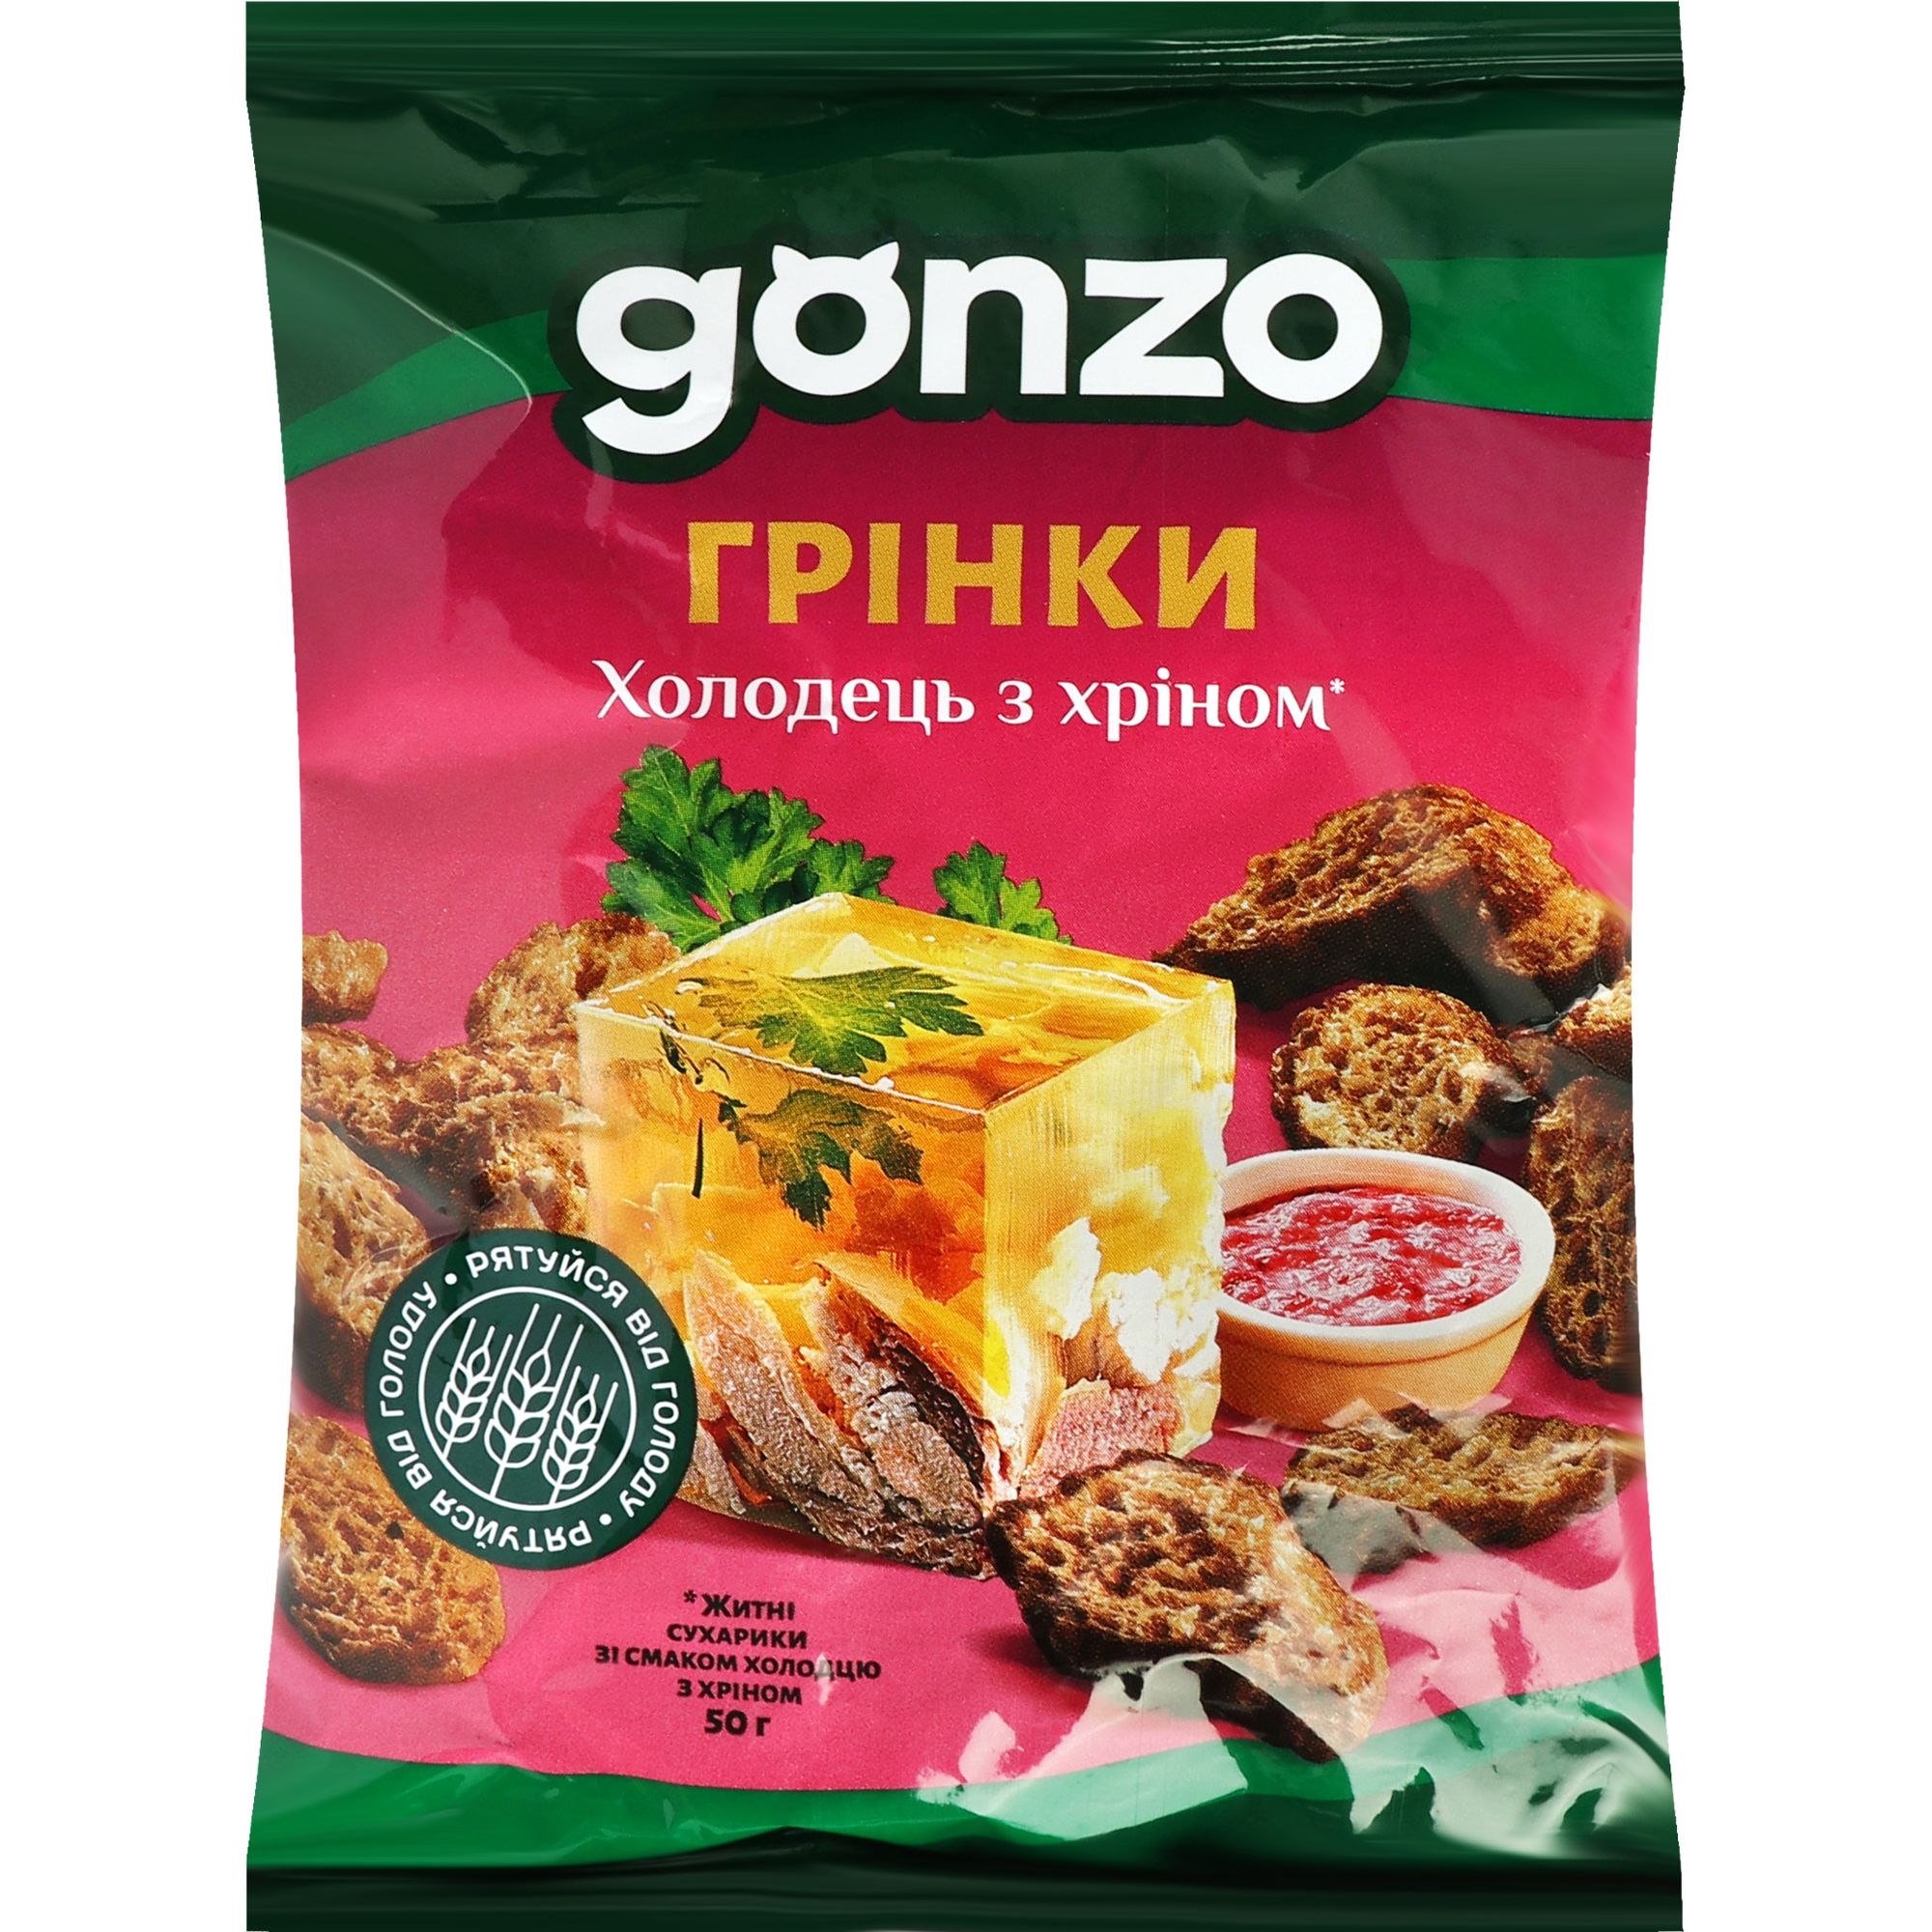 Житні сухарики Gonzo зі смаком холодцю з хріном 50 г (903649) - фото 1